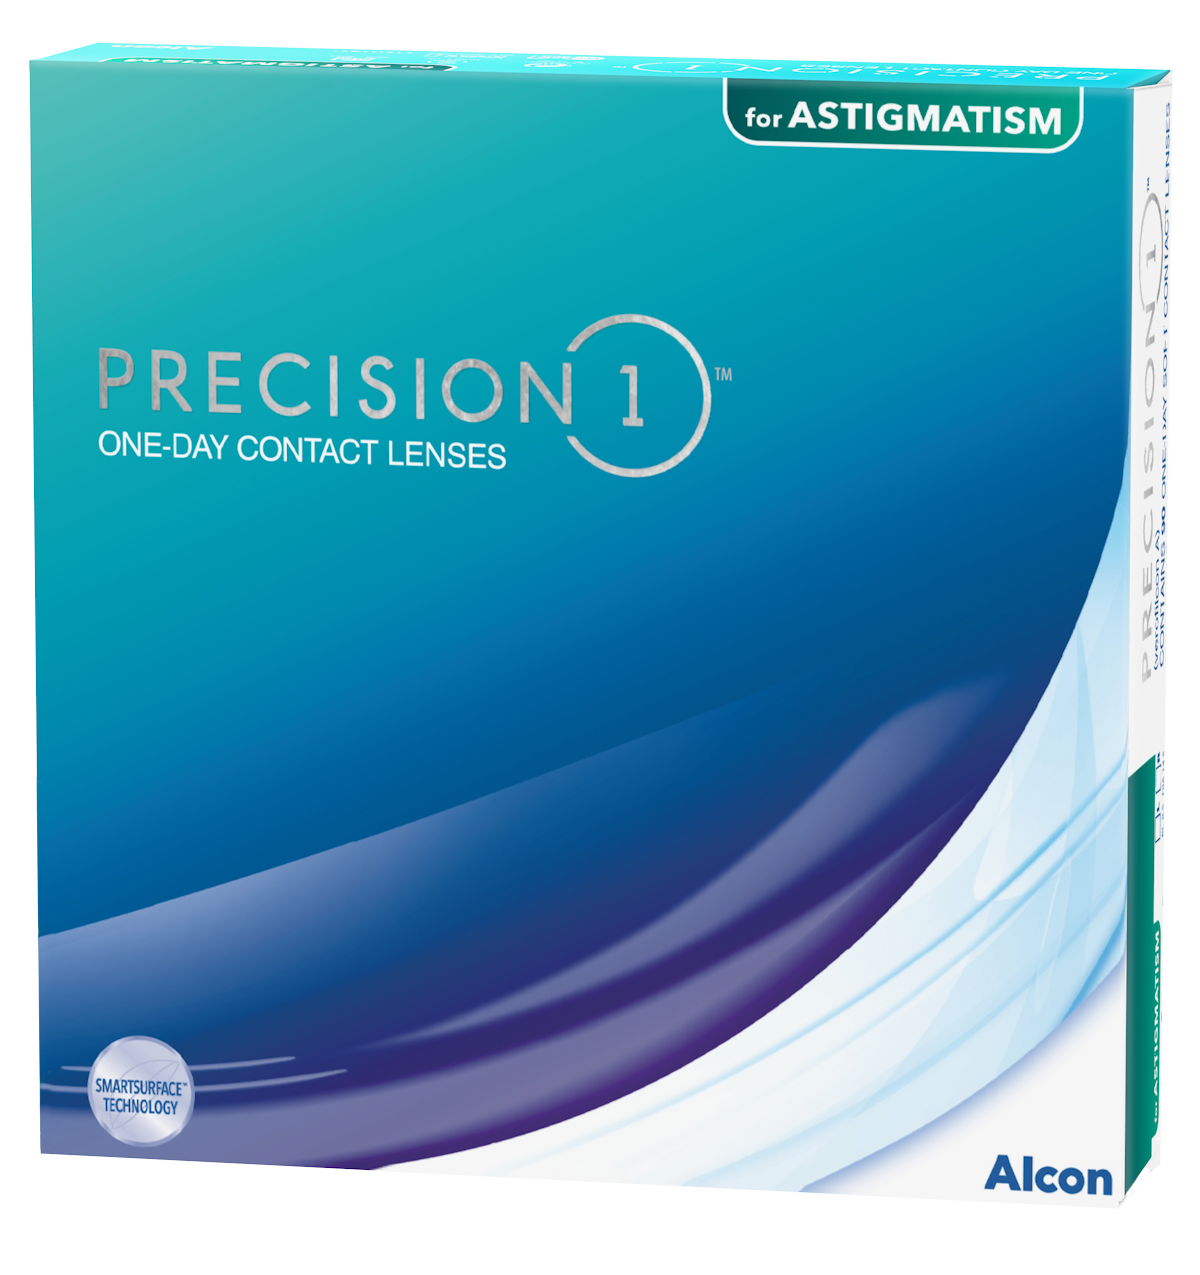 Das Bild zeigt die Verpackung der torischen Kontaktlinse Precision 1 for Astigmatism .